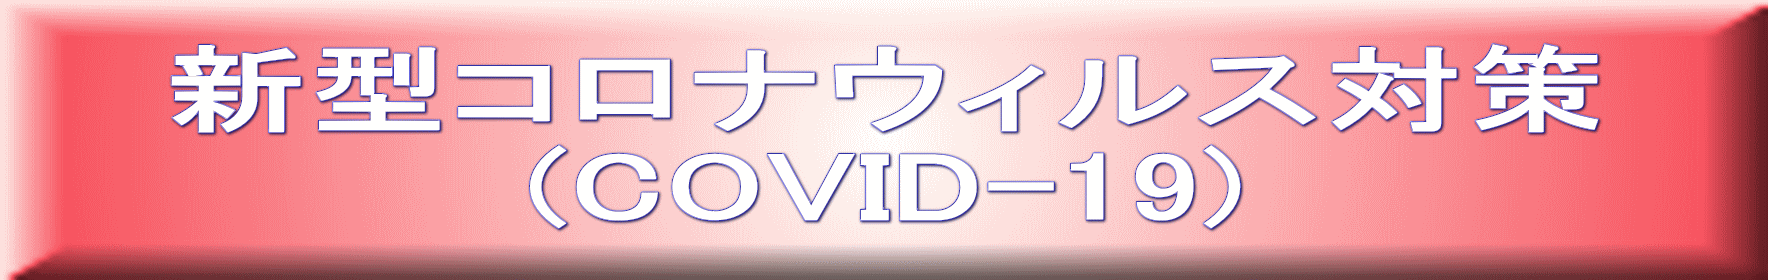 V^RiEBX΍ (COVID-19)